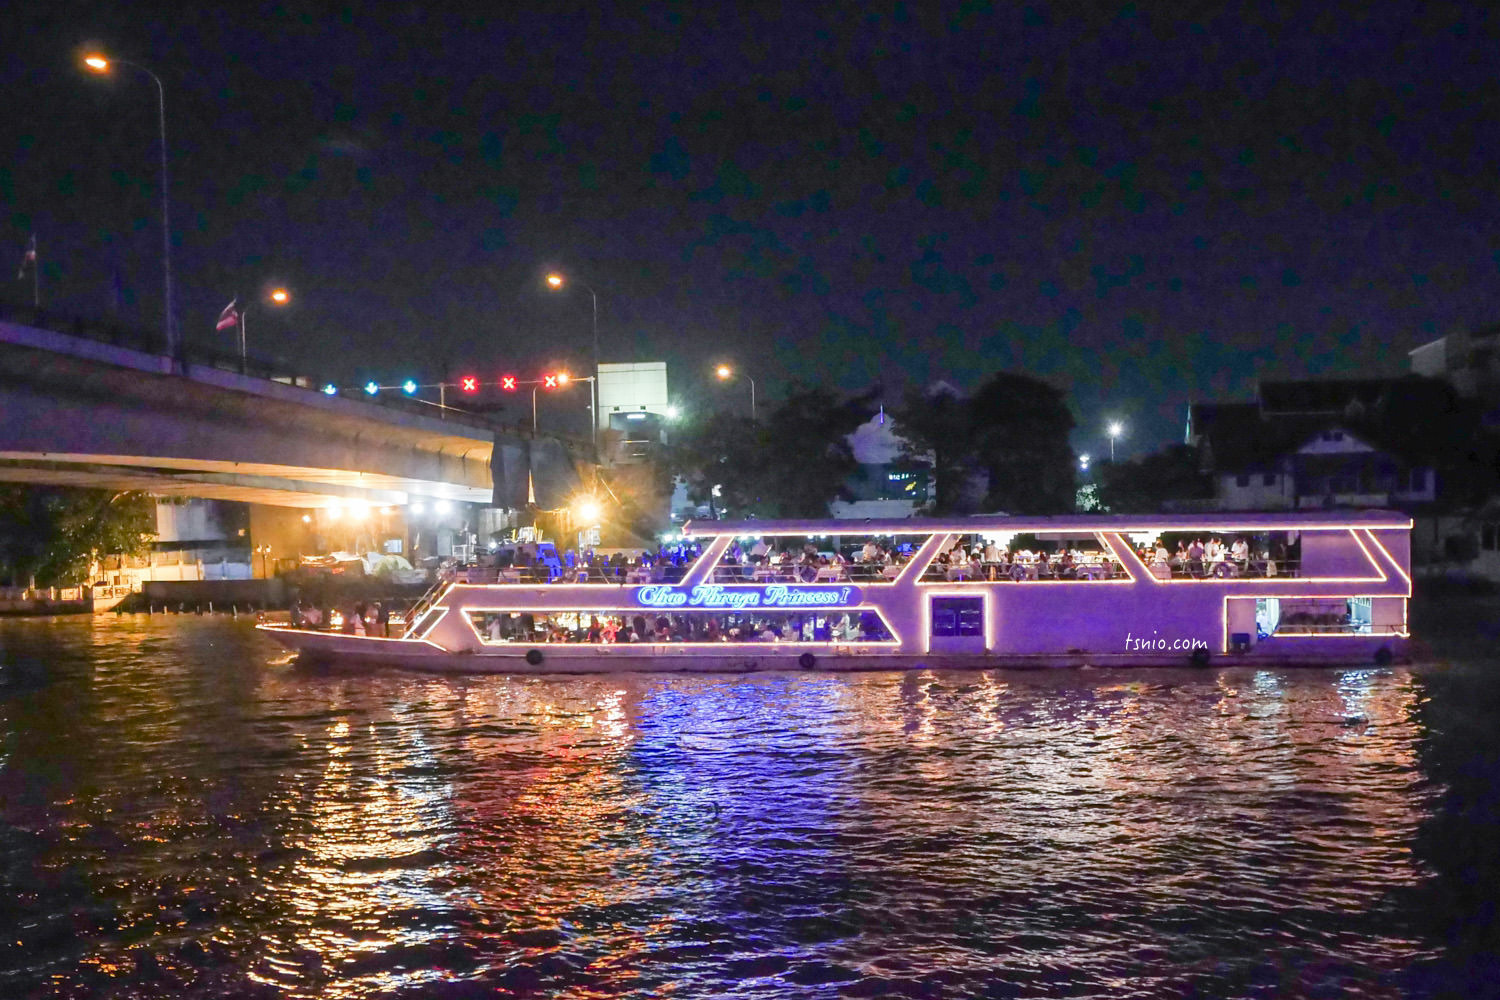 曼谷昭披耶河遊船晚宴 公主號  Chao Phraya Princess